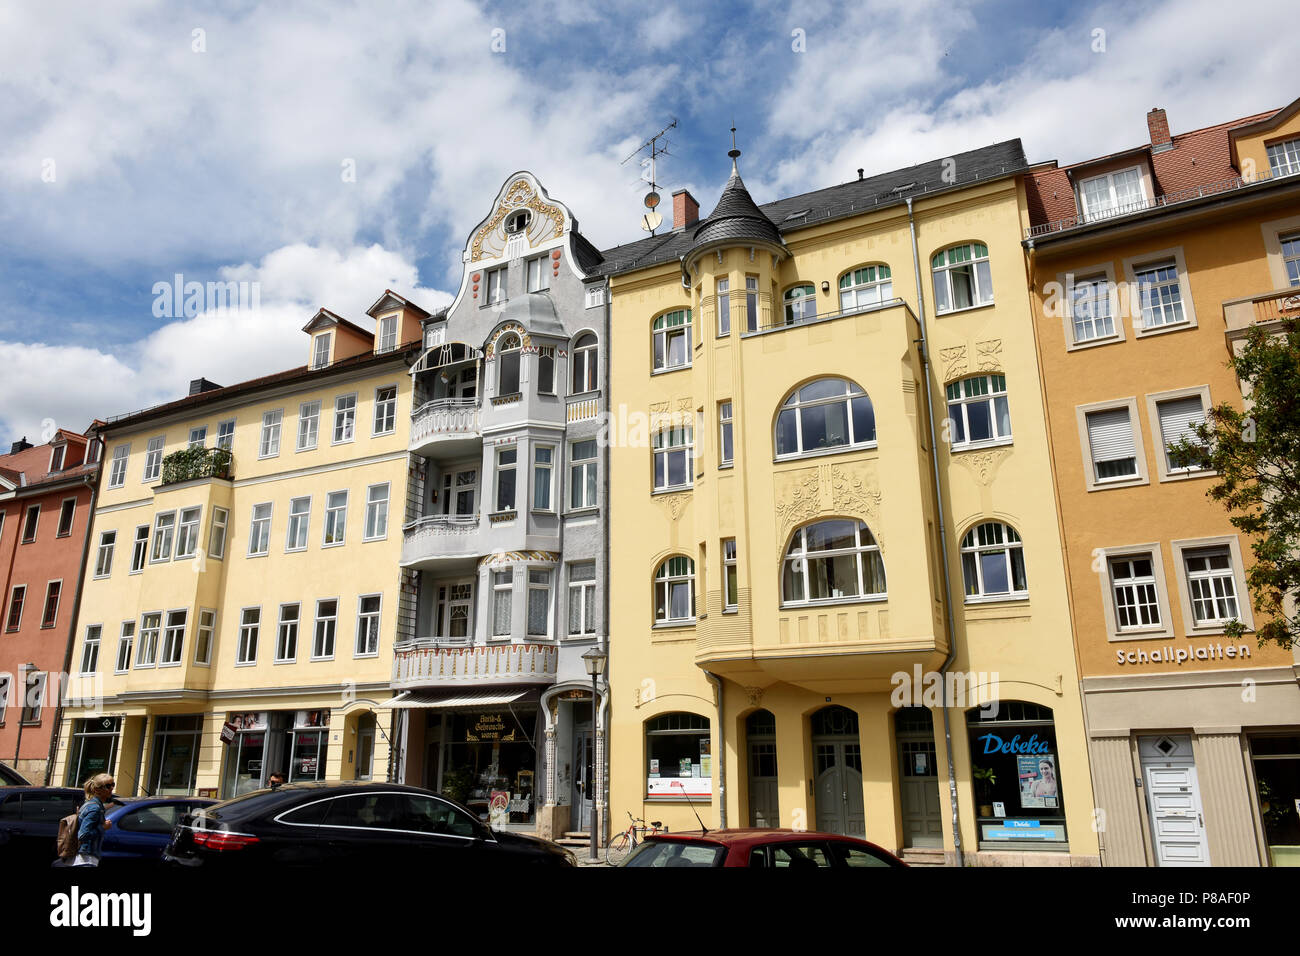 Appartements maisons élégantes de Weimar, en Thuringe, Allemagne, Europe Banque D'Images